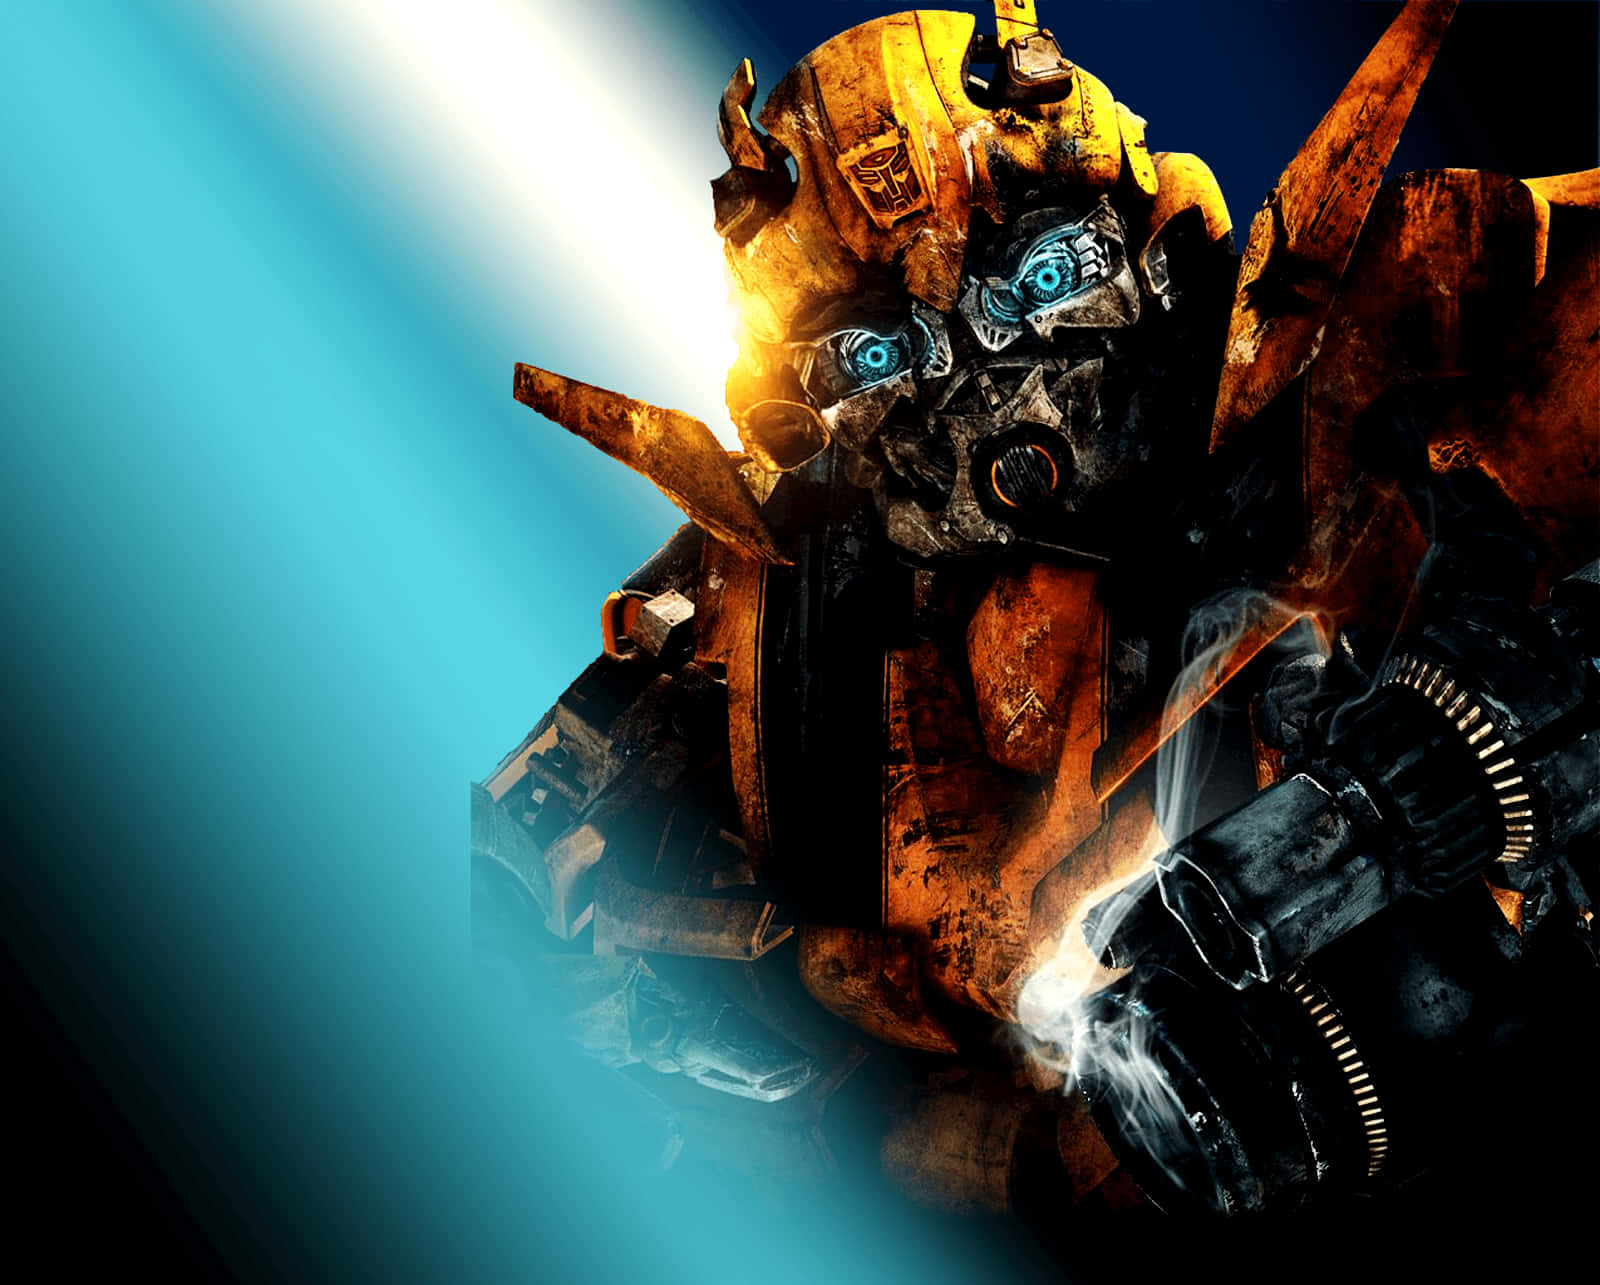 Lernebumblebee Kennen, Einen Furchtlosen Autobot Aus Dem Transformers-universum. Wallpaper